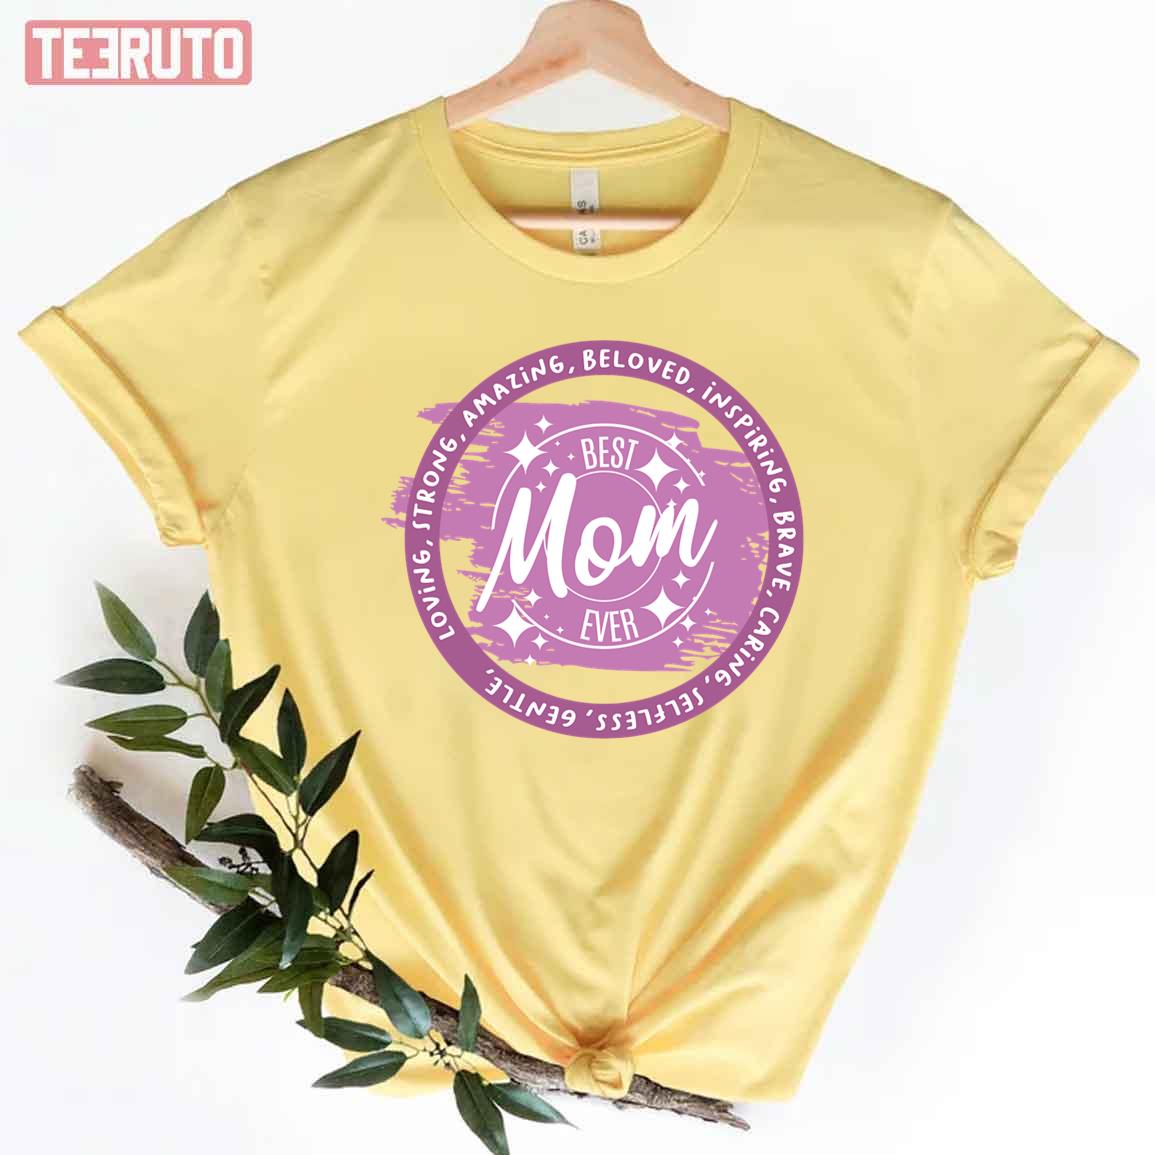 Loving Strong Amazing Beloved Inspiring Brave Gentle Kind Best Mom Ever Unisex T-Shirt